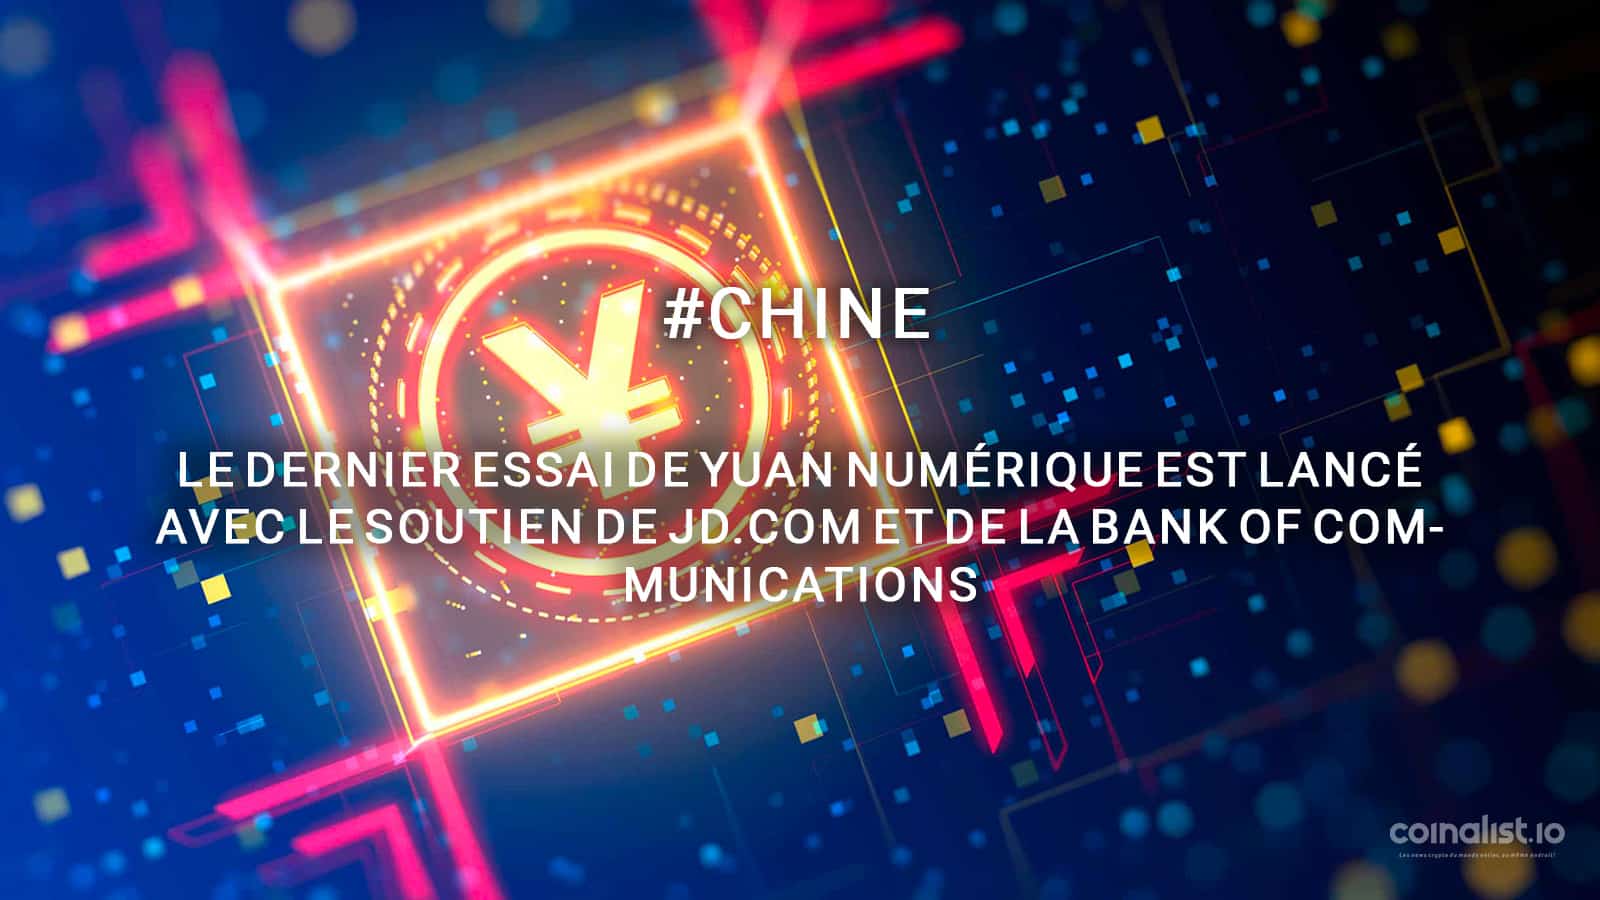 Le Dernier Essai De Yuan Numérique Est Lancé Avec Le Soutien De Jd.com Et De La Bank Of Communications - Chine